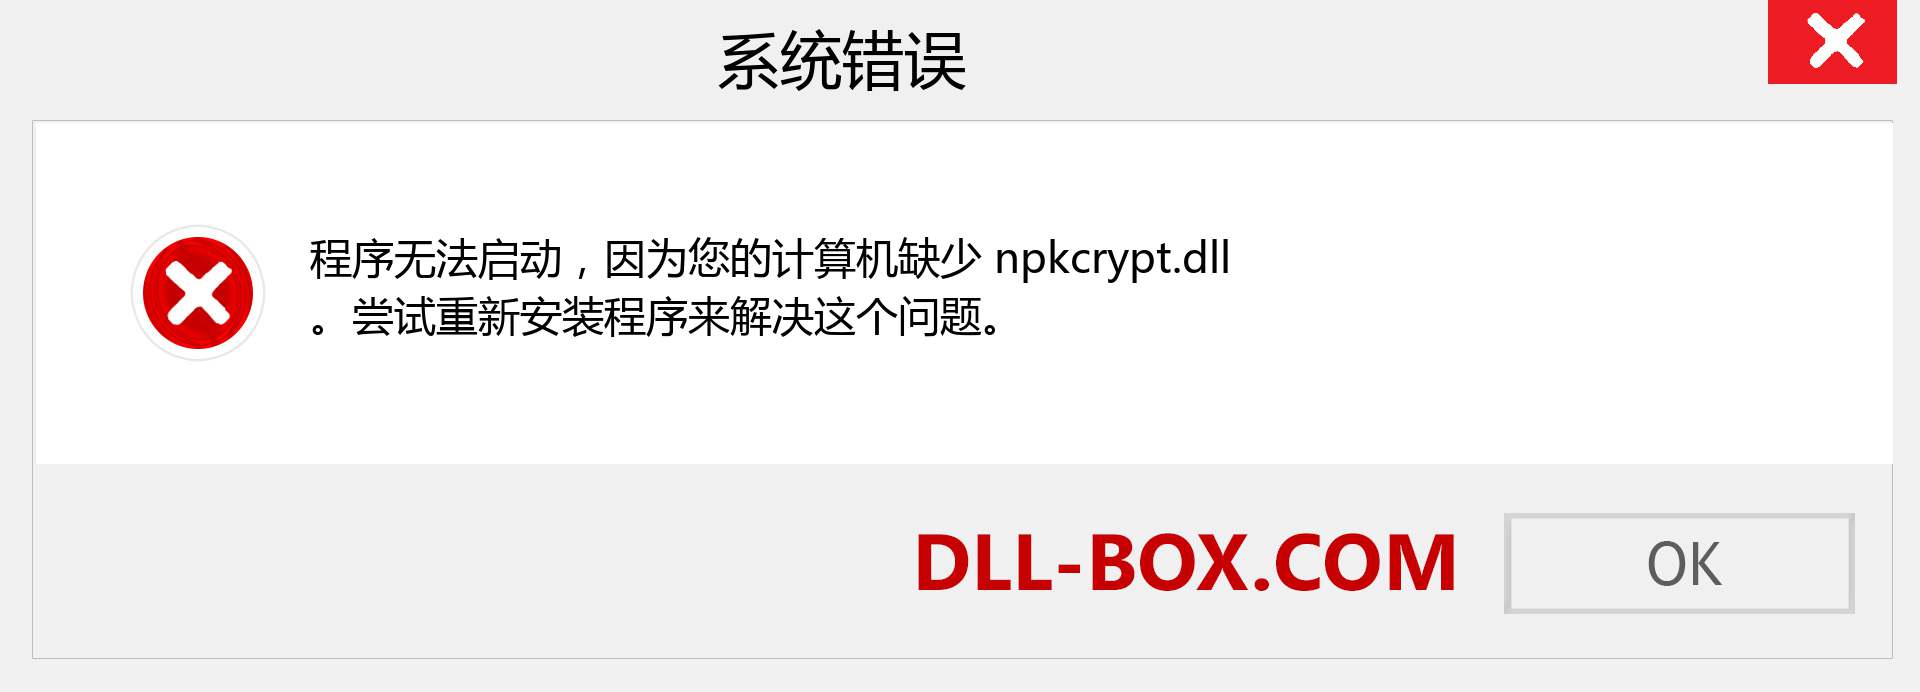 npkcrypt.dll 文件丢失？。 适用于 Windows 7、8、10 的下载 - 修复 Windows、照片、图像上的 npkcrypt dll 丢失错误